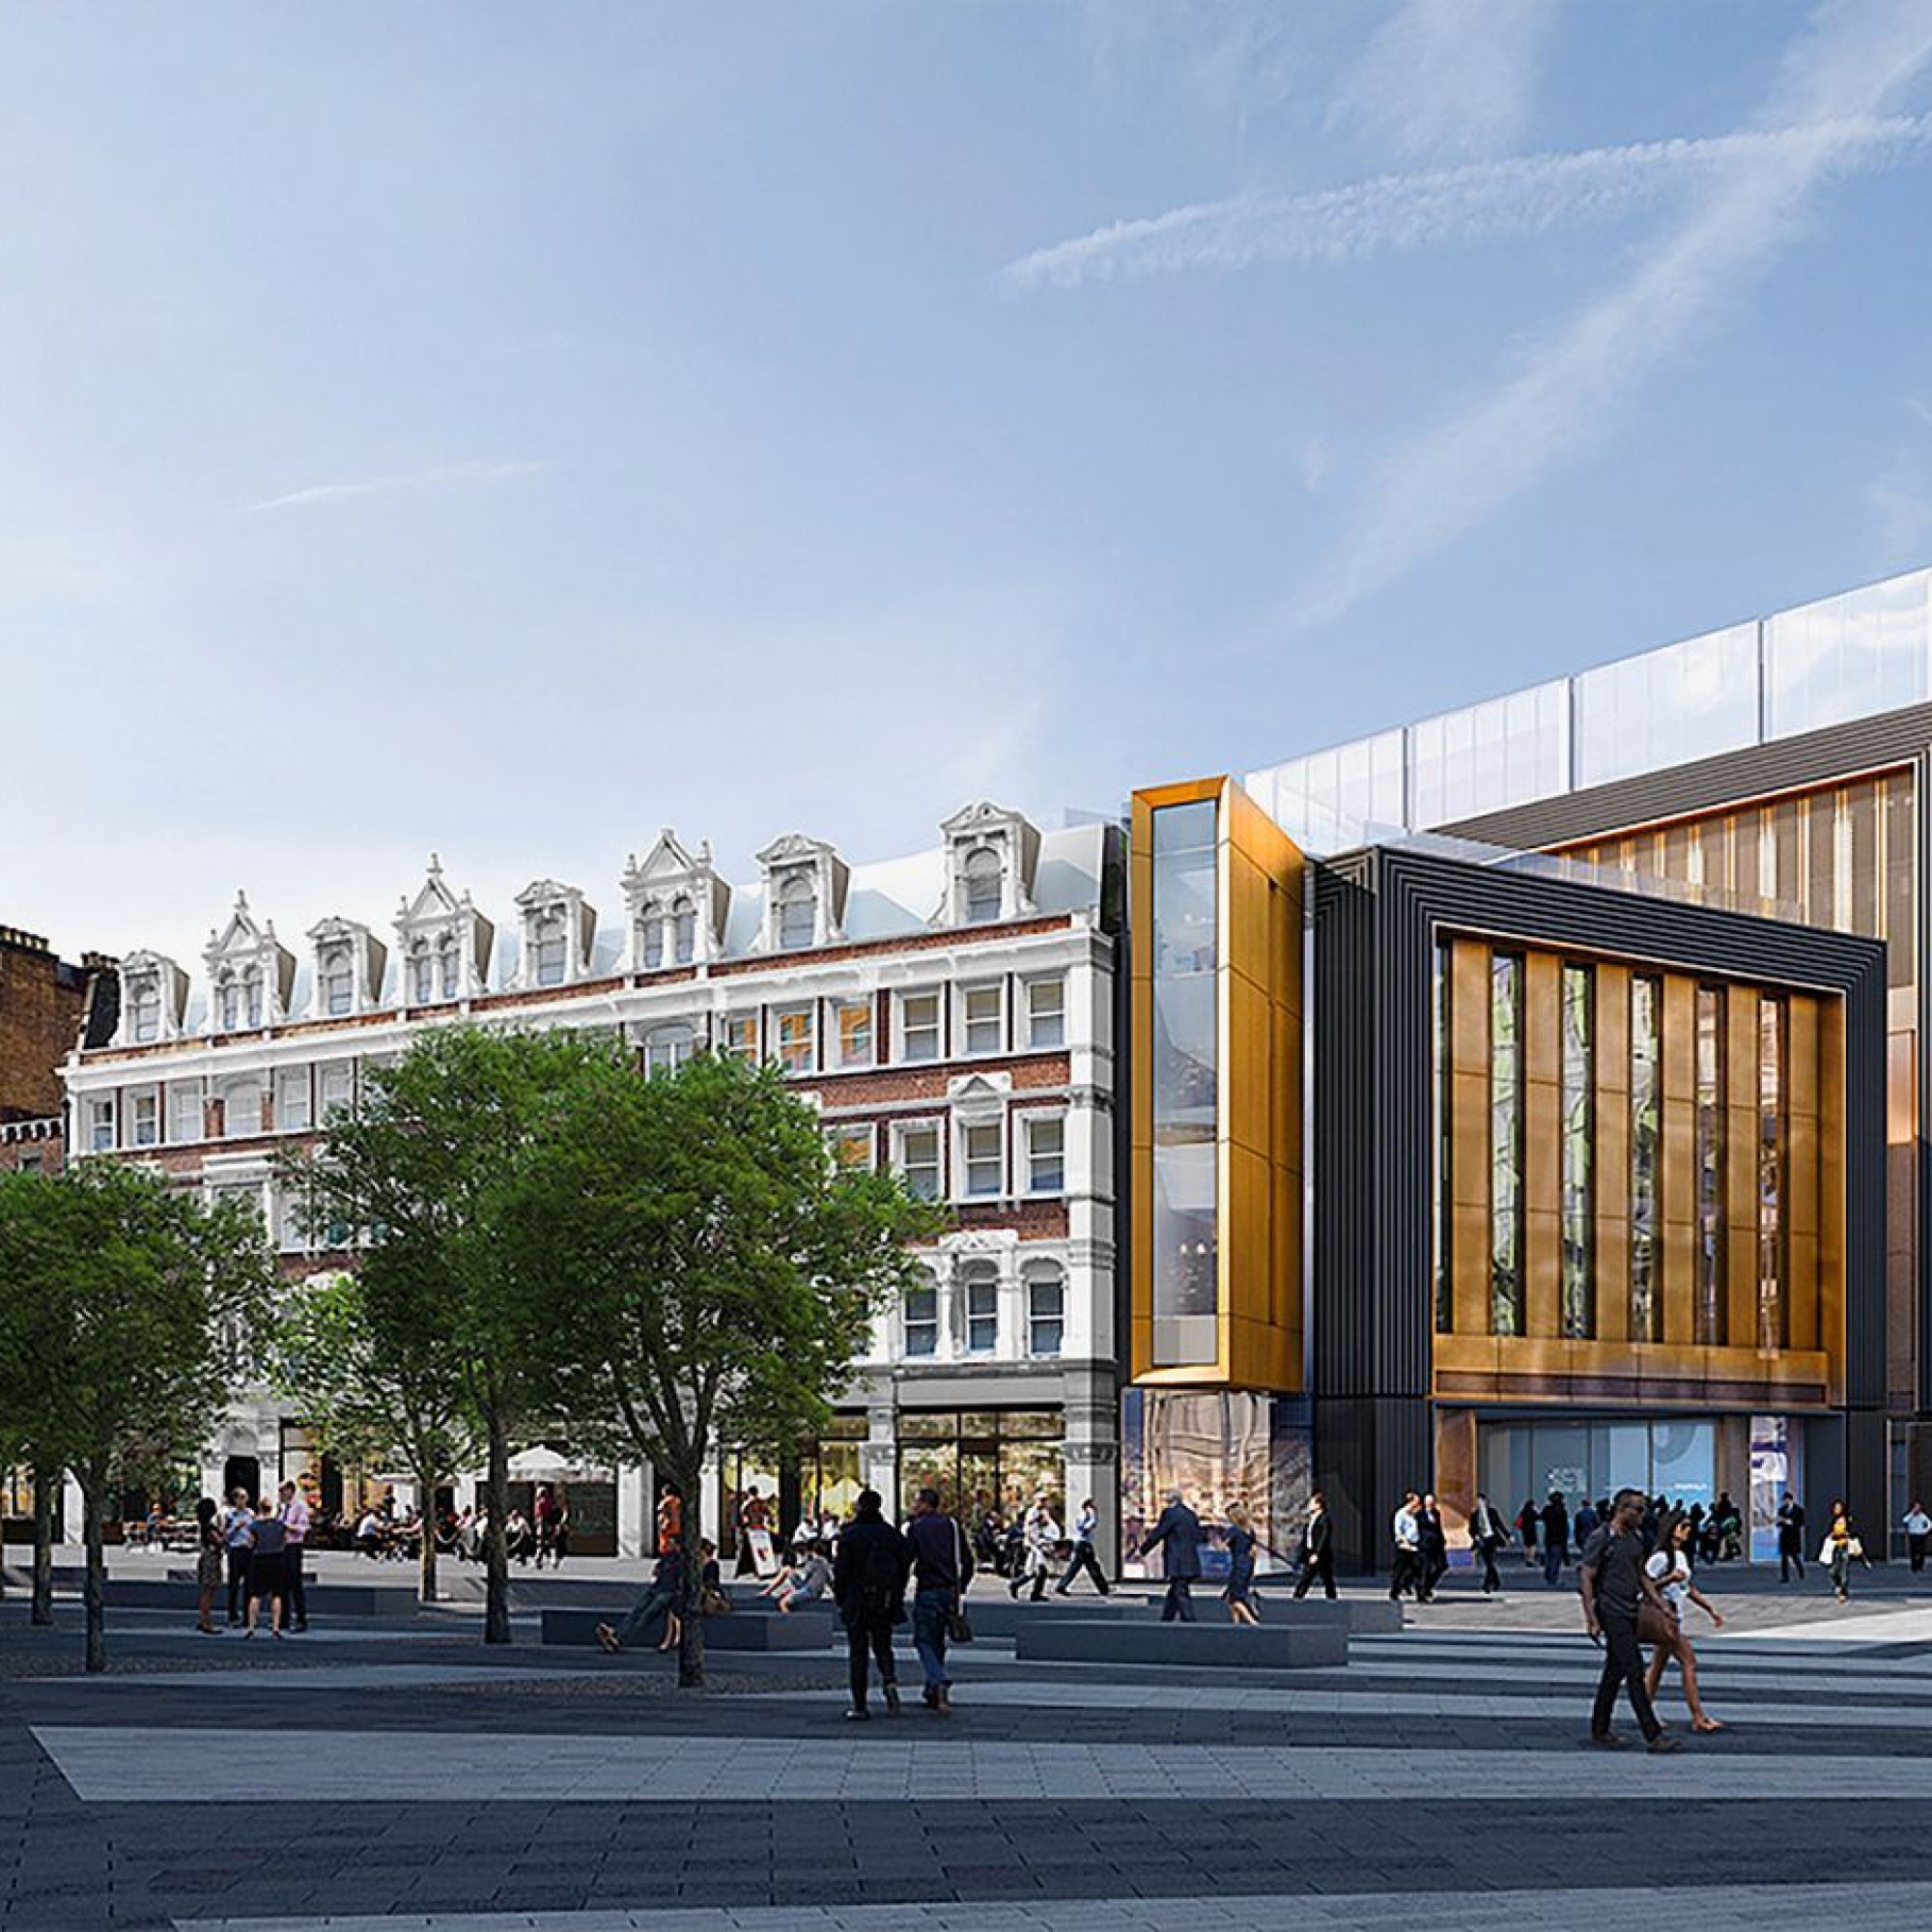 Ein Kontrast mitten im Stadtteil London Borough of Camden: Neben einer denkmalgeschützten Fassadenfront entsteht der St. Giles Circus.